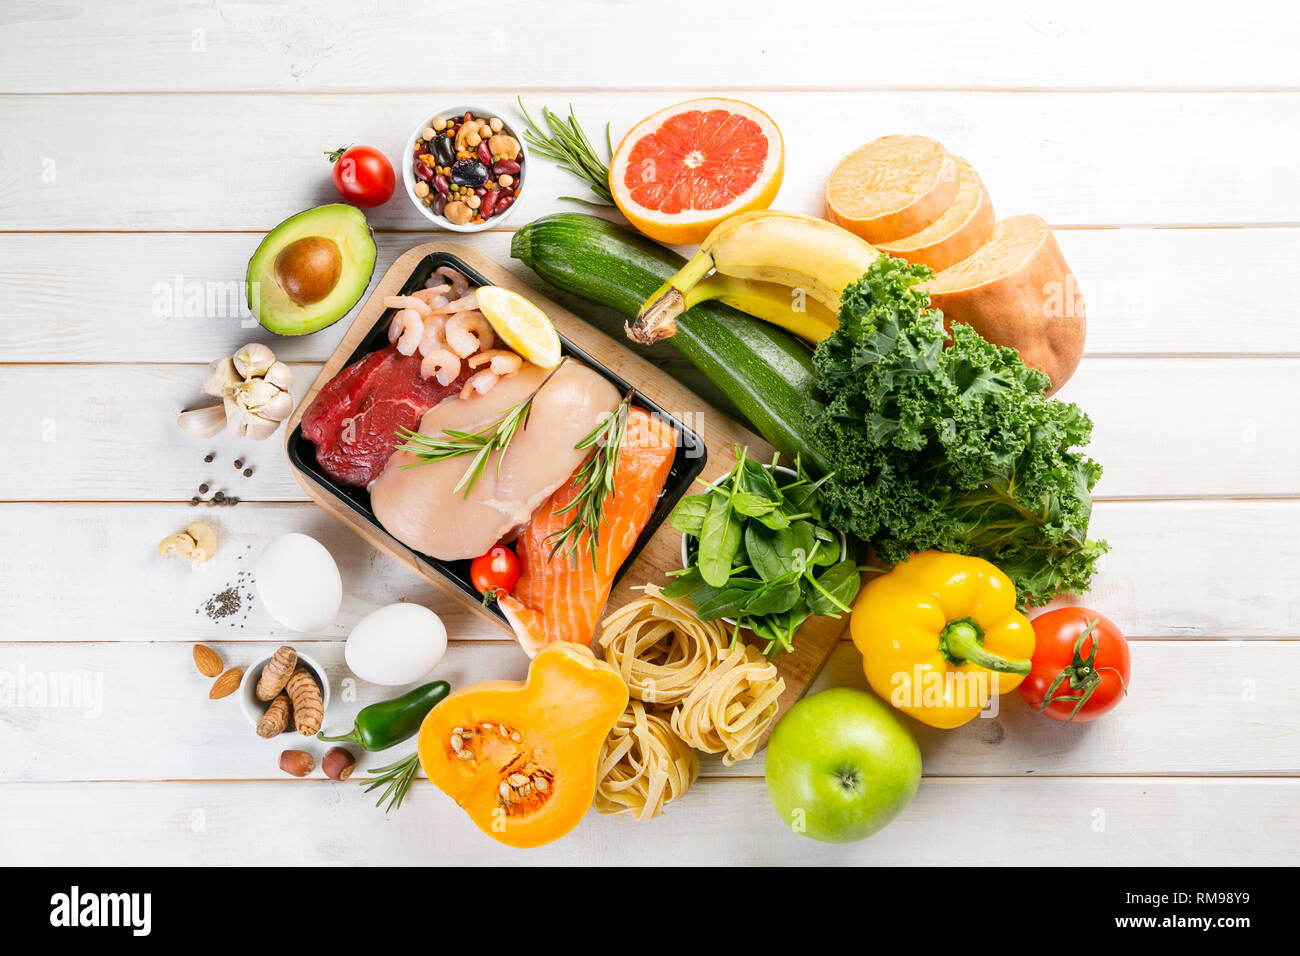 Dieta bilanciata concetto - carne fresca, pesce, pasta, frutta e verdura, frutta secca e semi Foto Stock